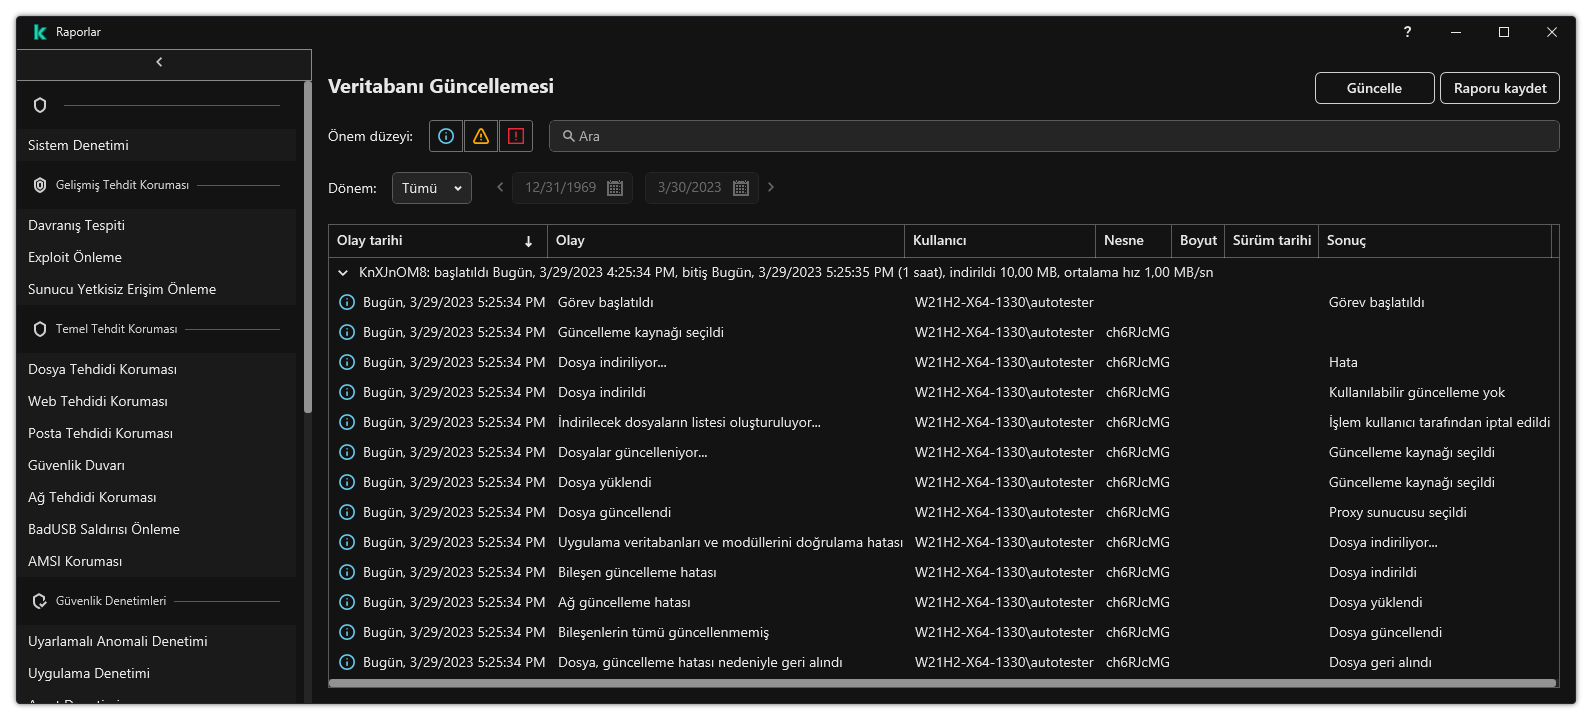 Rapordaki olayların listesini içeren bir pencere. Kullanıcı olayları filtreleyebilir/sıralayabilir ve raporları bir dosyaya kaydedebilir.